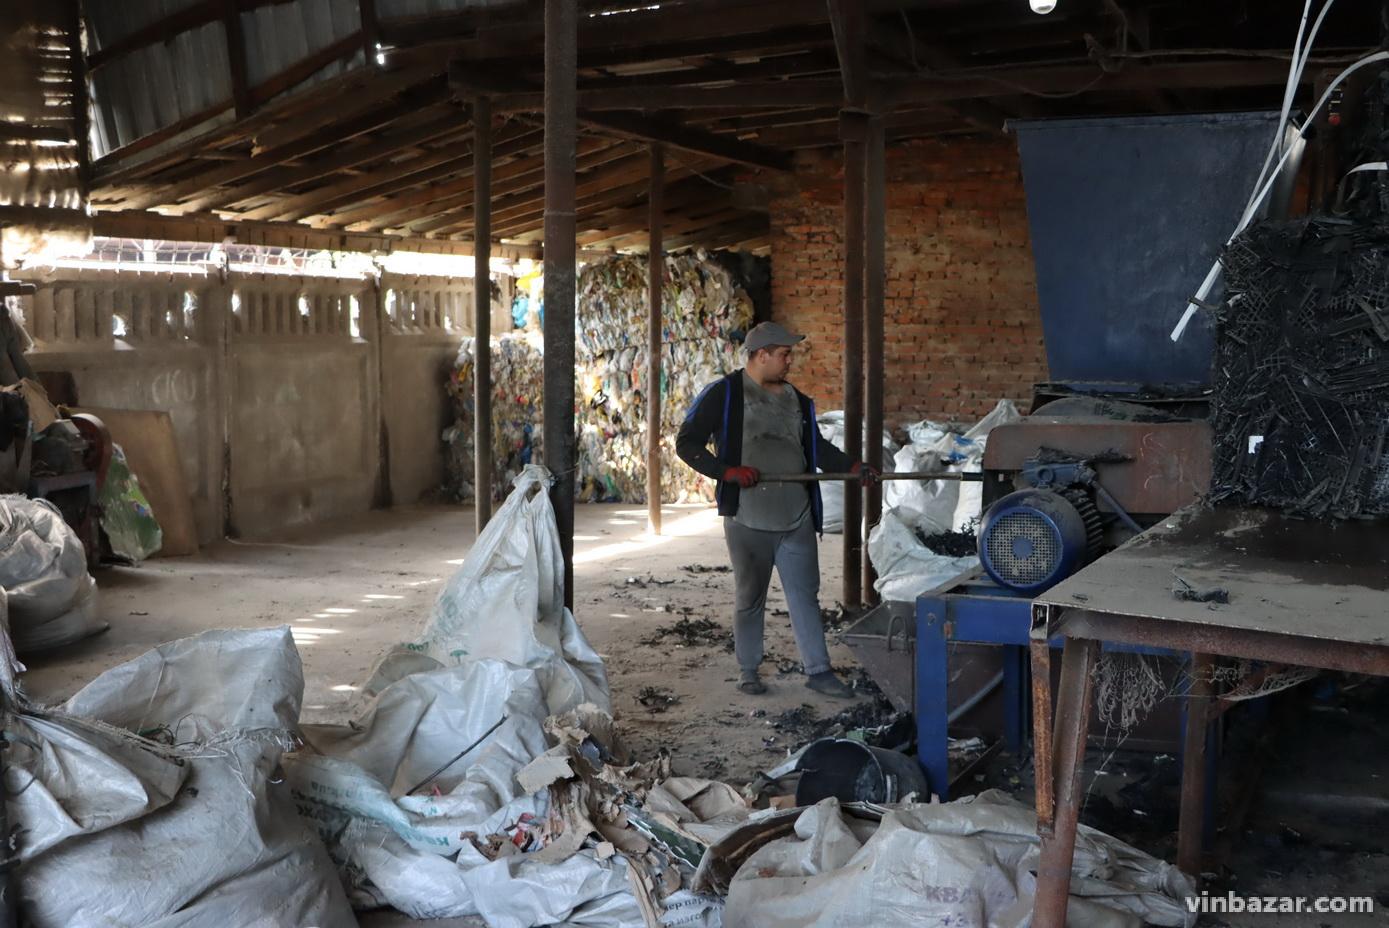 Завод у Вінниці виготовляє кришки для люків зі сміття. Продукцію експортують до Європи та Латинської Америки (Фото)